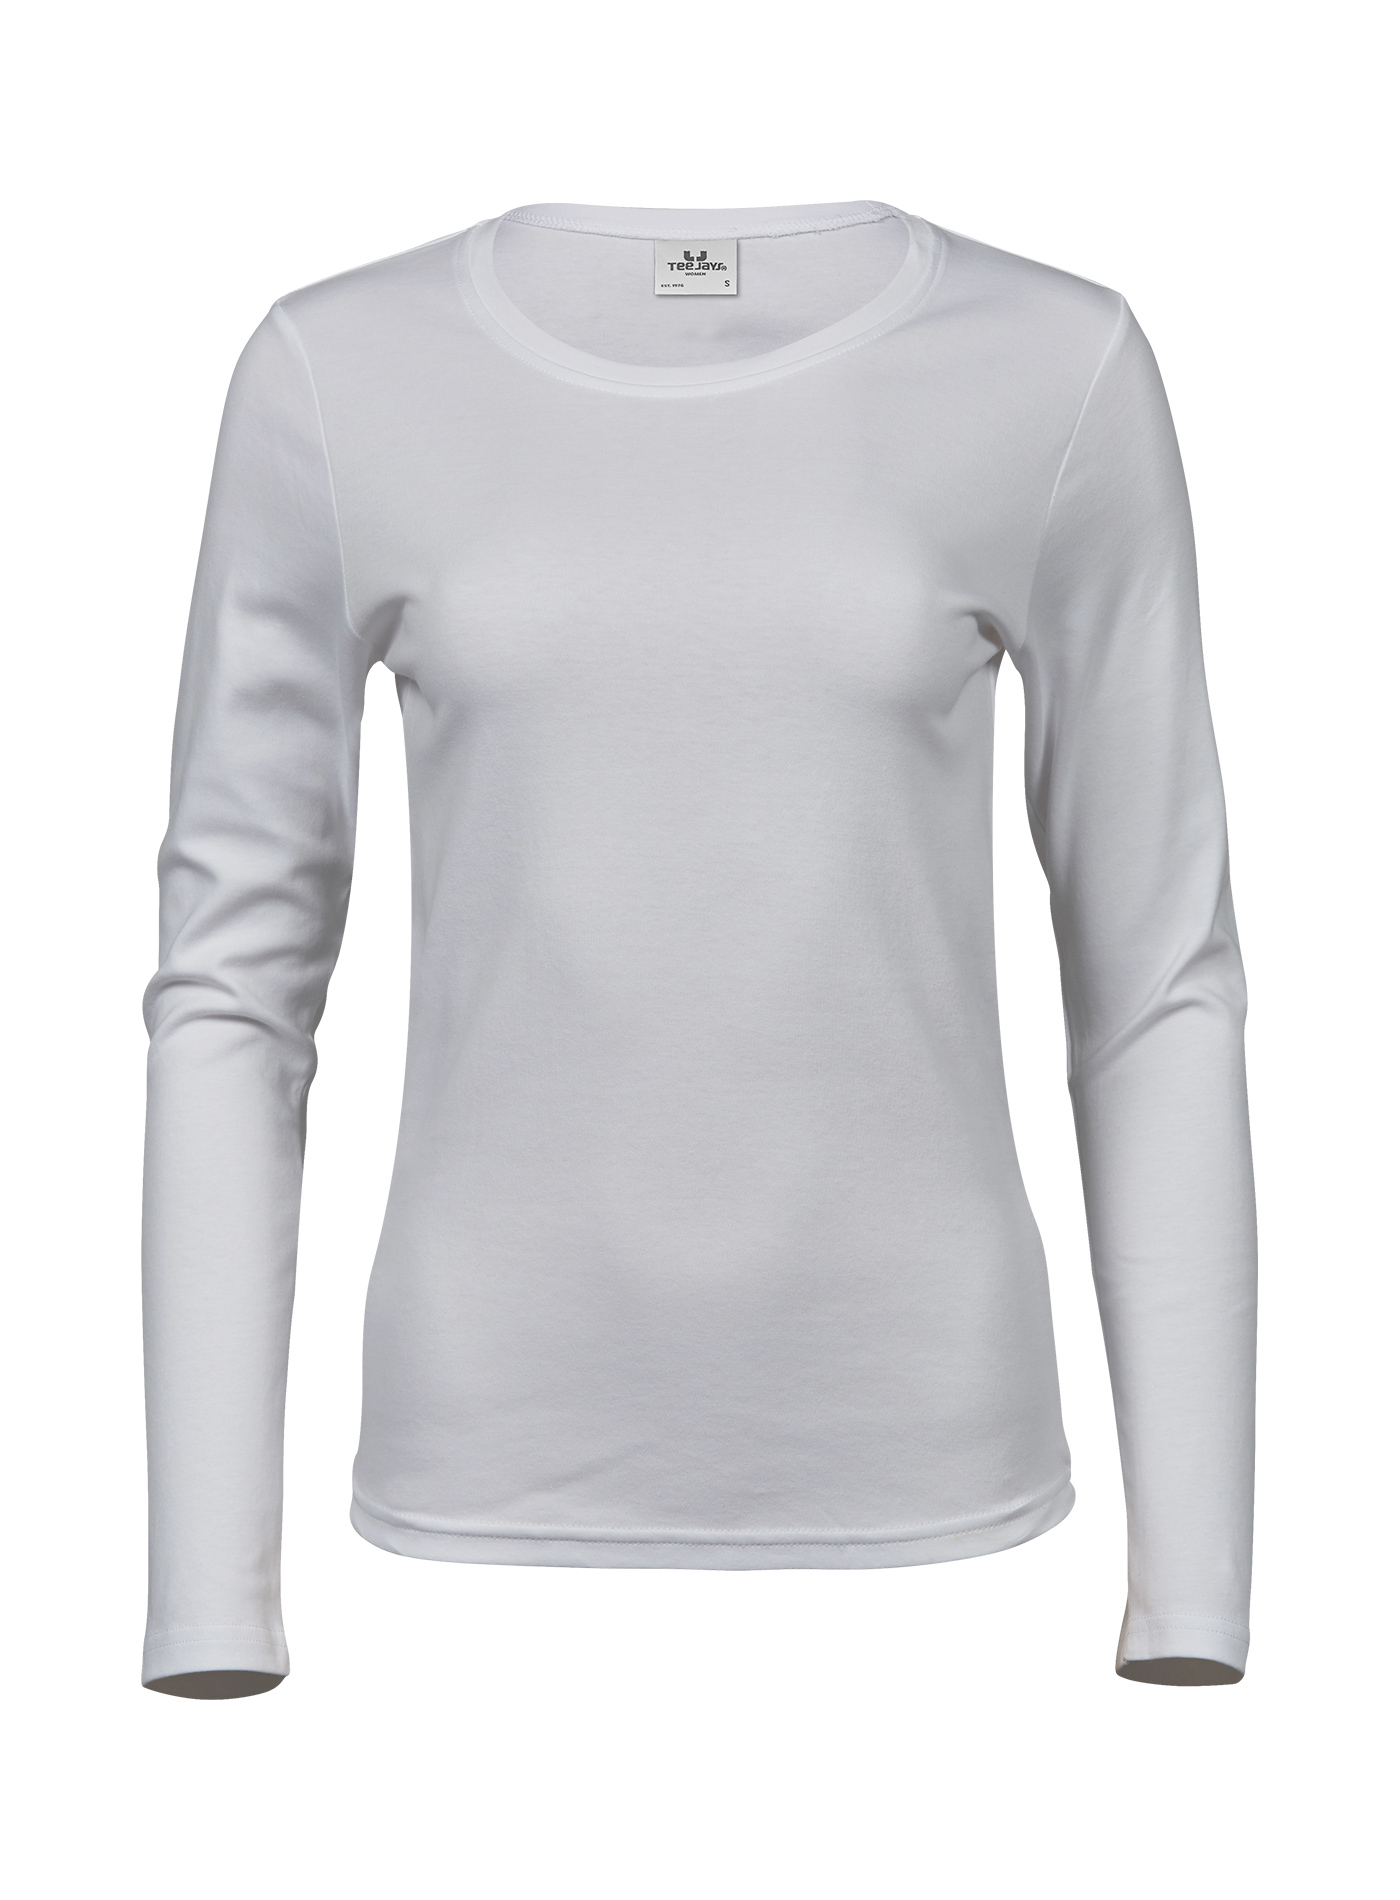 Dámské tričko s dlouhými rukávy Tee Jays Interlock - Bílá S